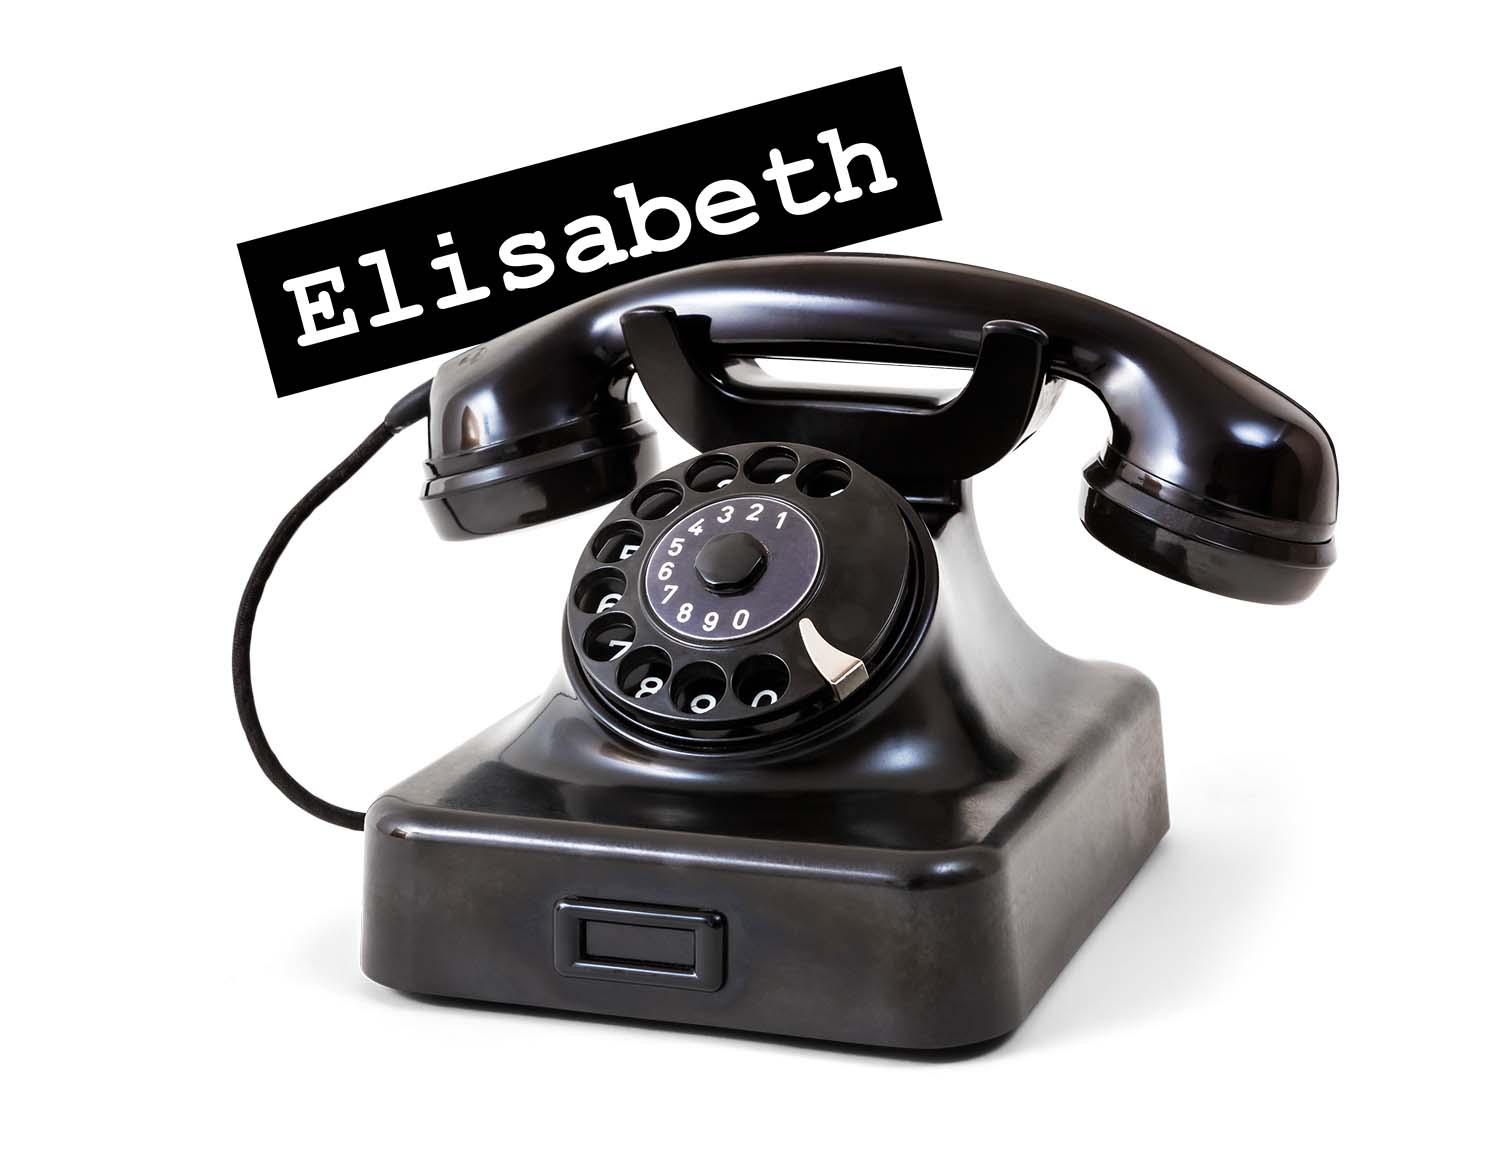 Das Audio Gästebuch Elisabeth von telefon-mieten.de